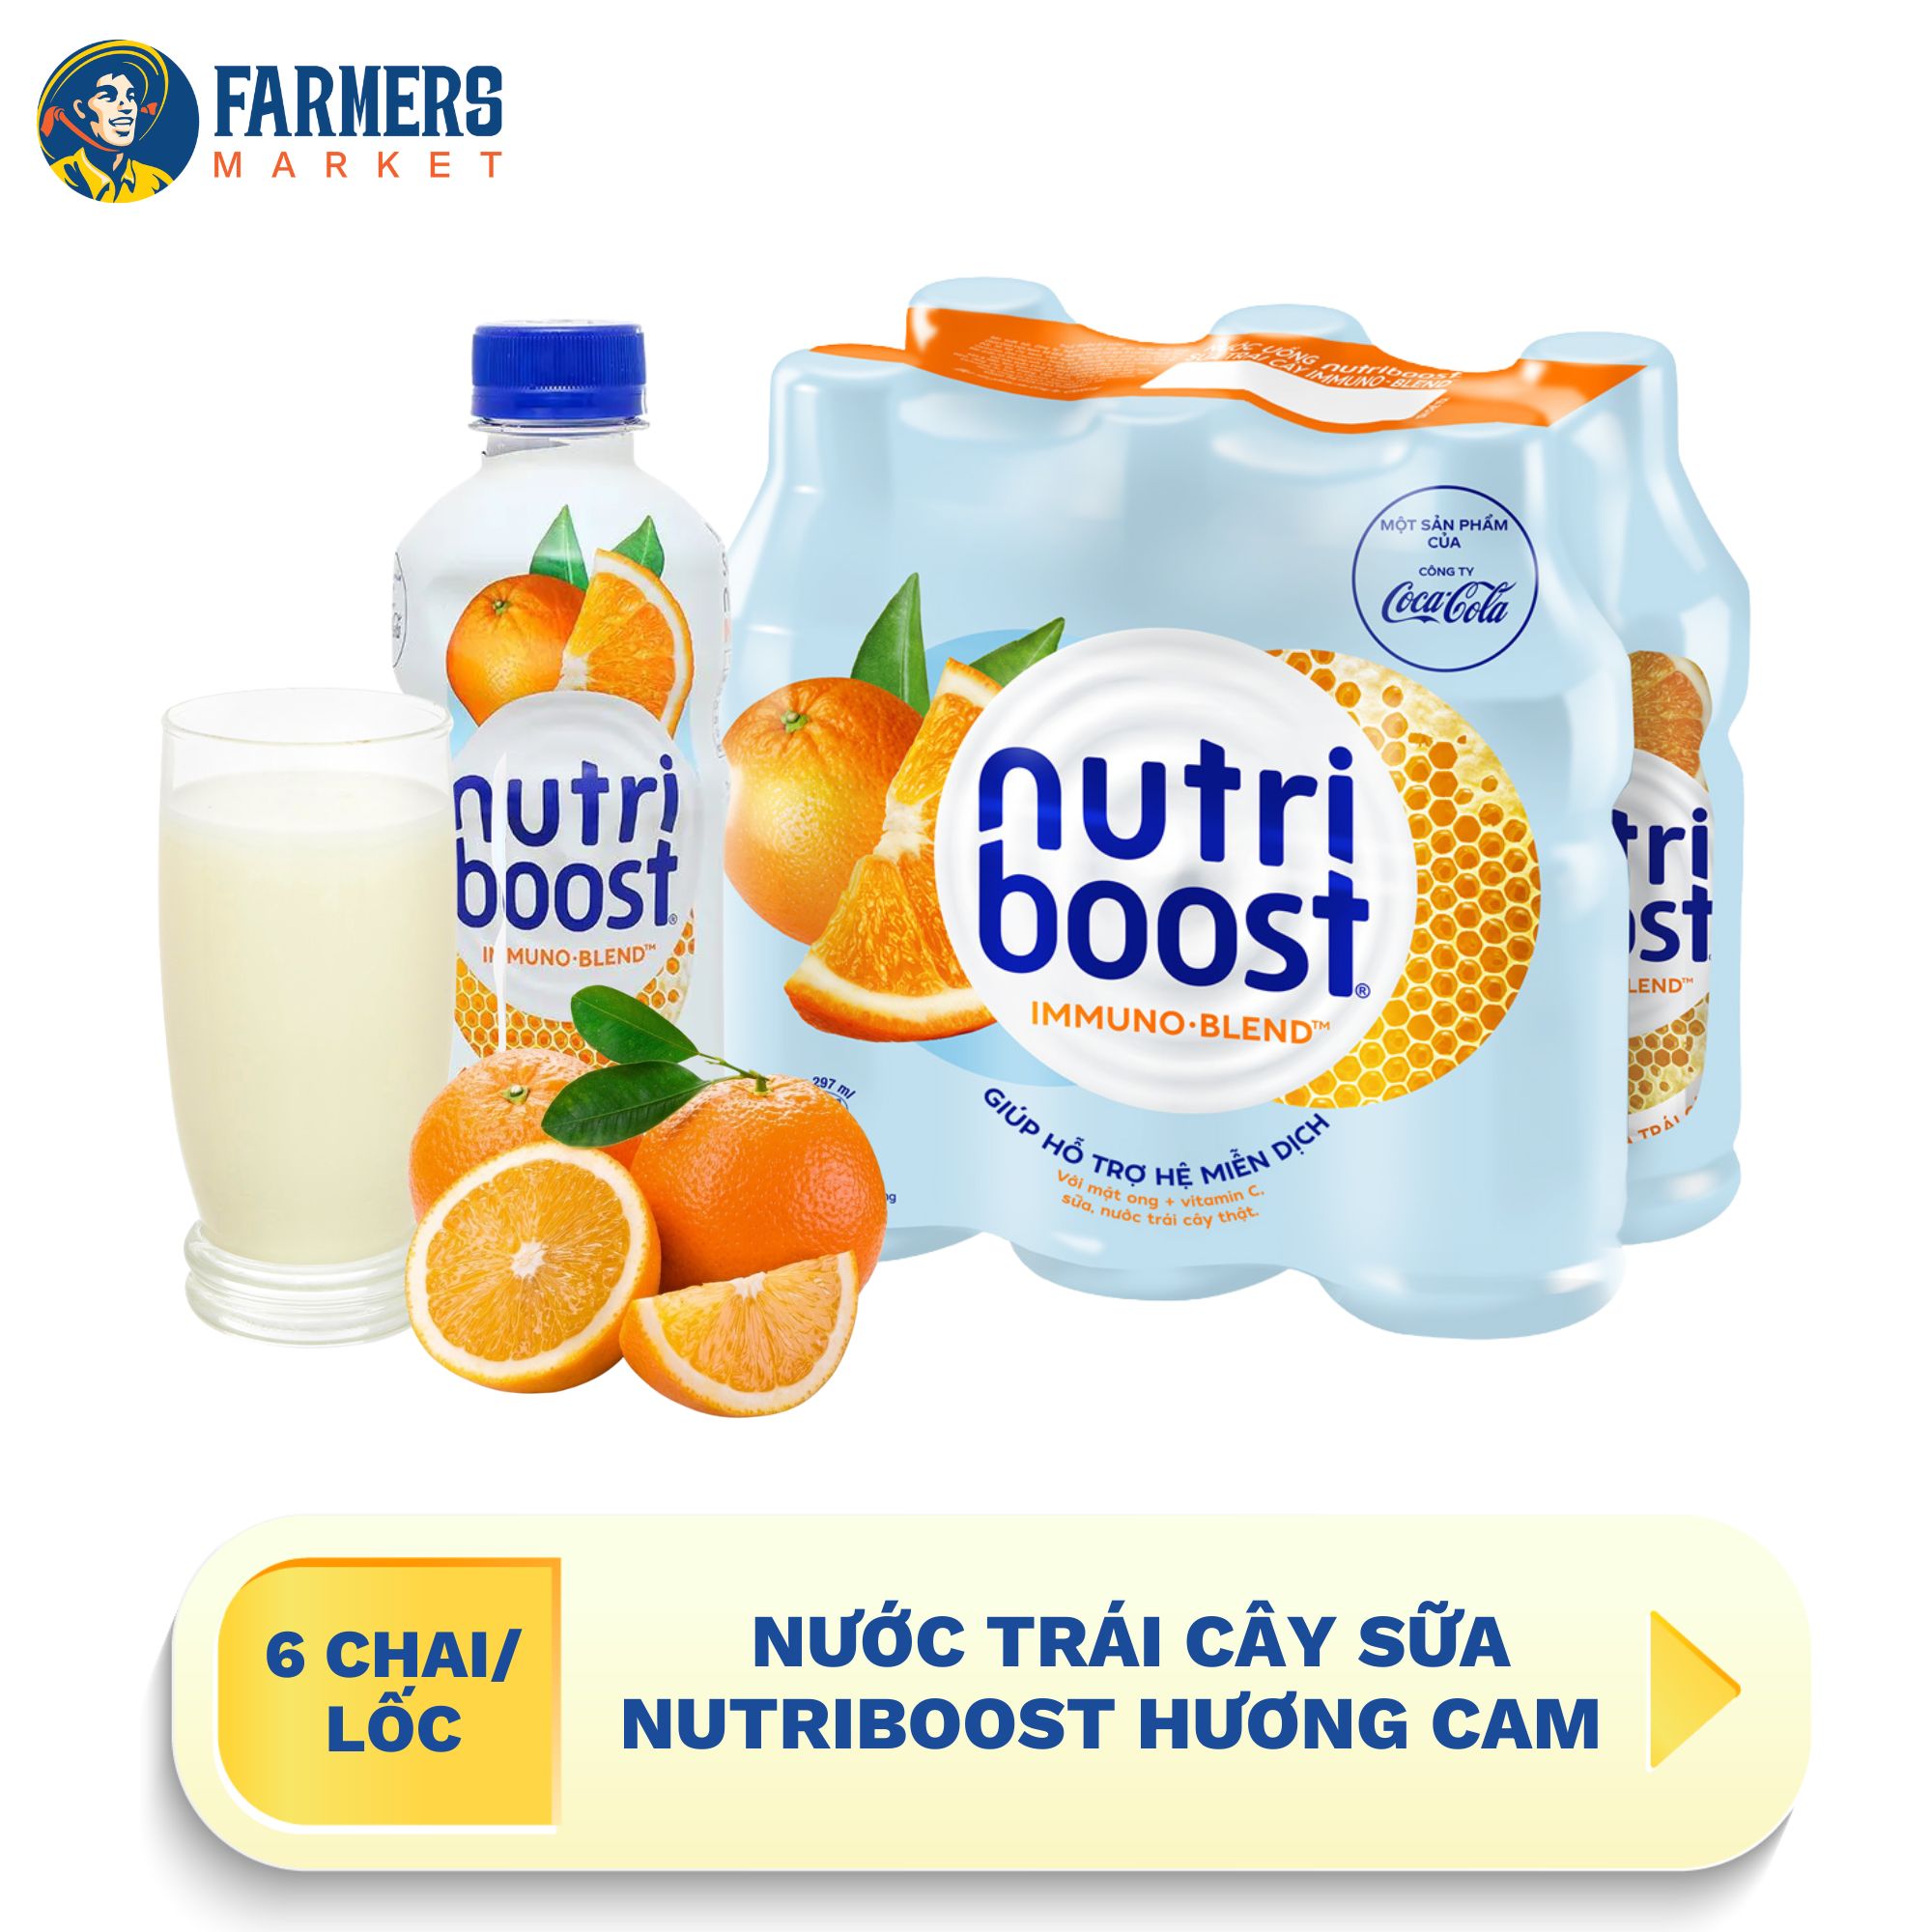 Giao hàng toàn quốc  Lốc 6 chai  Nước trái cây sữa Nutriboost hương cam -